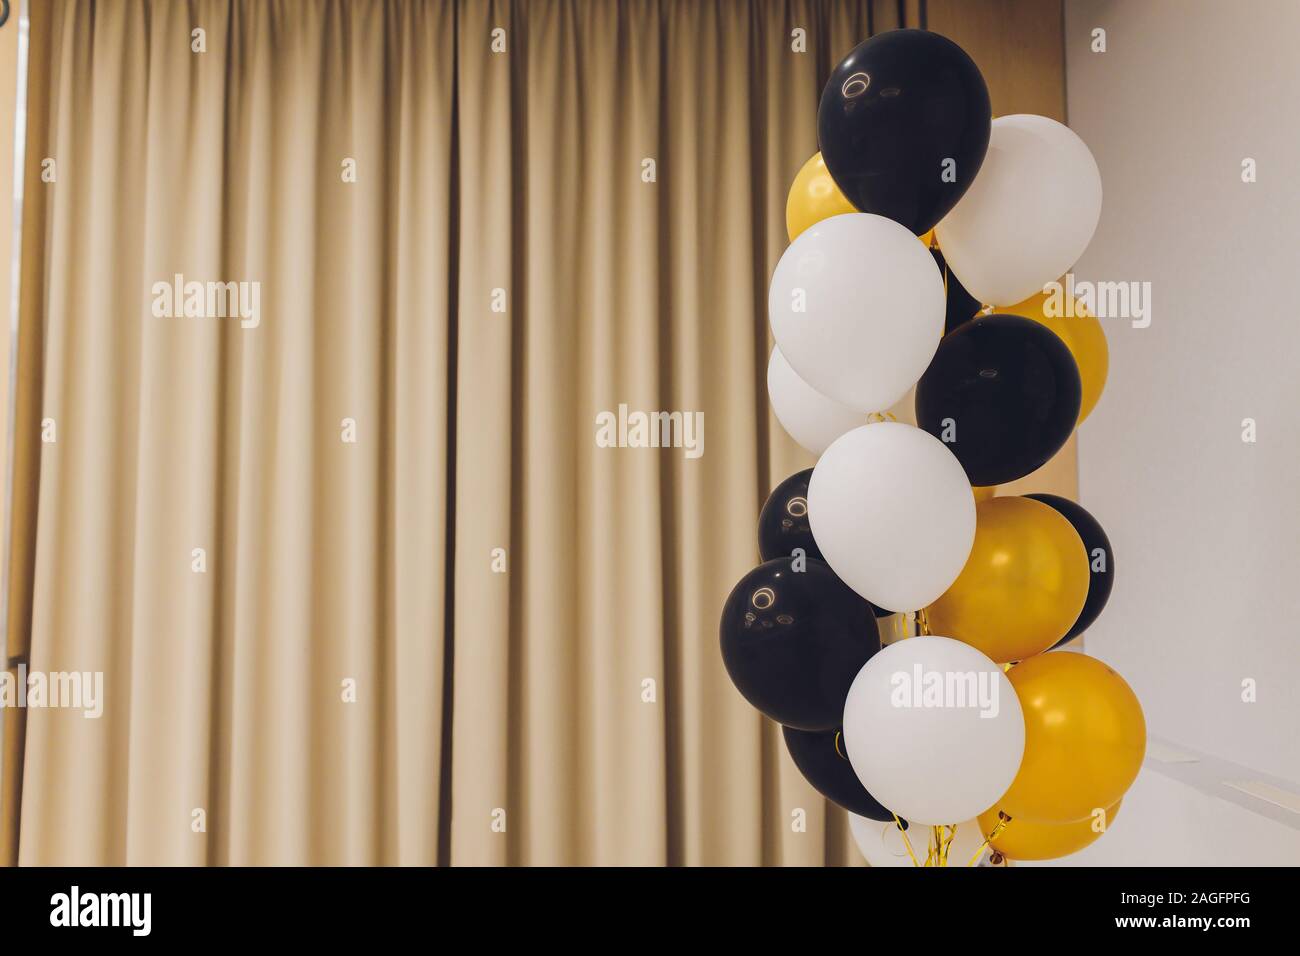 Luftballons Luftballon Weiss Mit Schwarzen Herzen Und Gelb Golden Mit Viel Grun Helium Fotoshooting Wand Stockfotografie Alamy